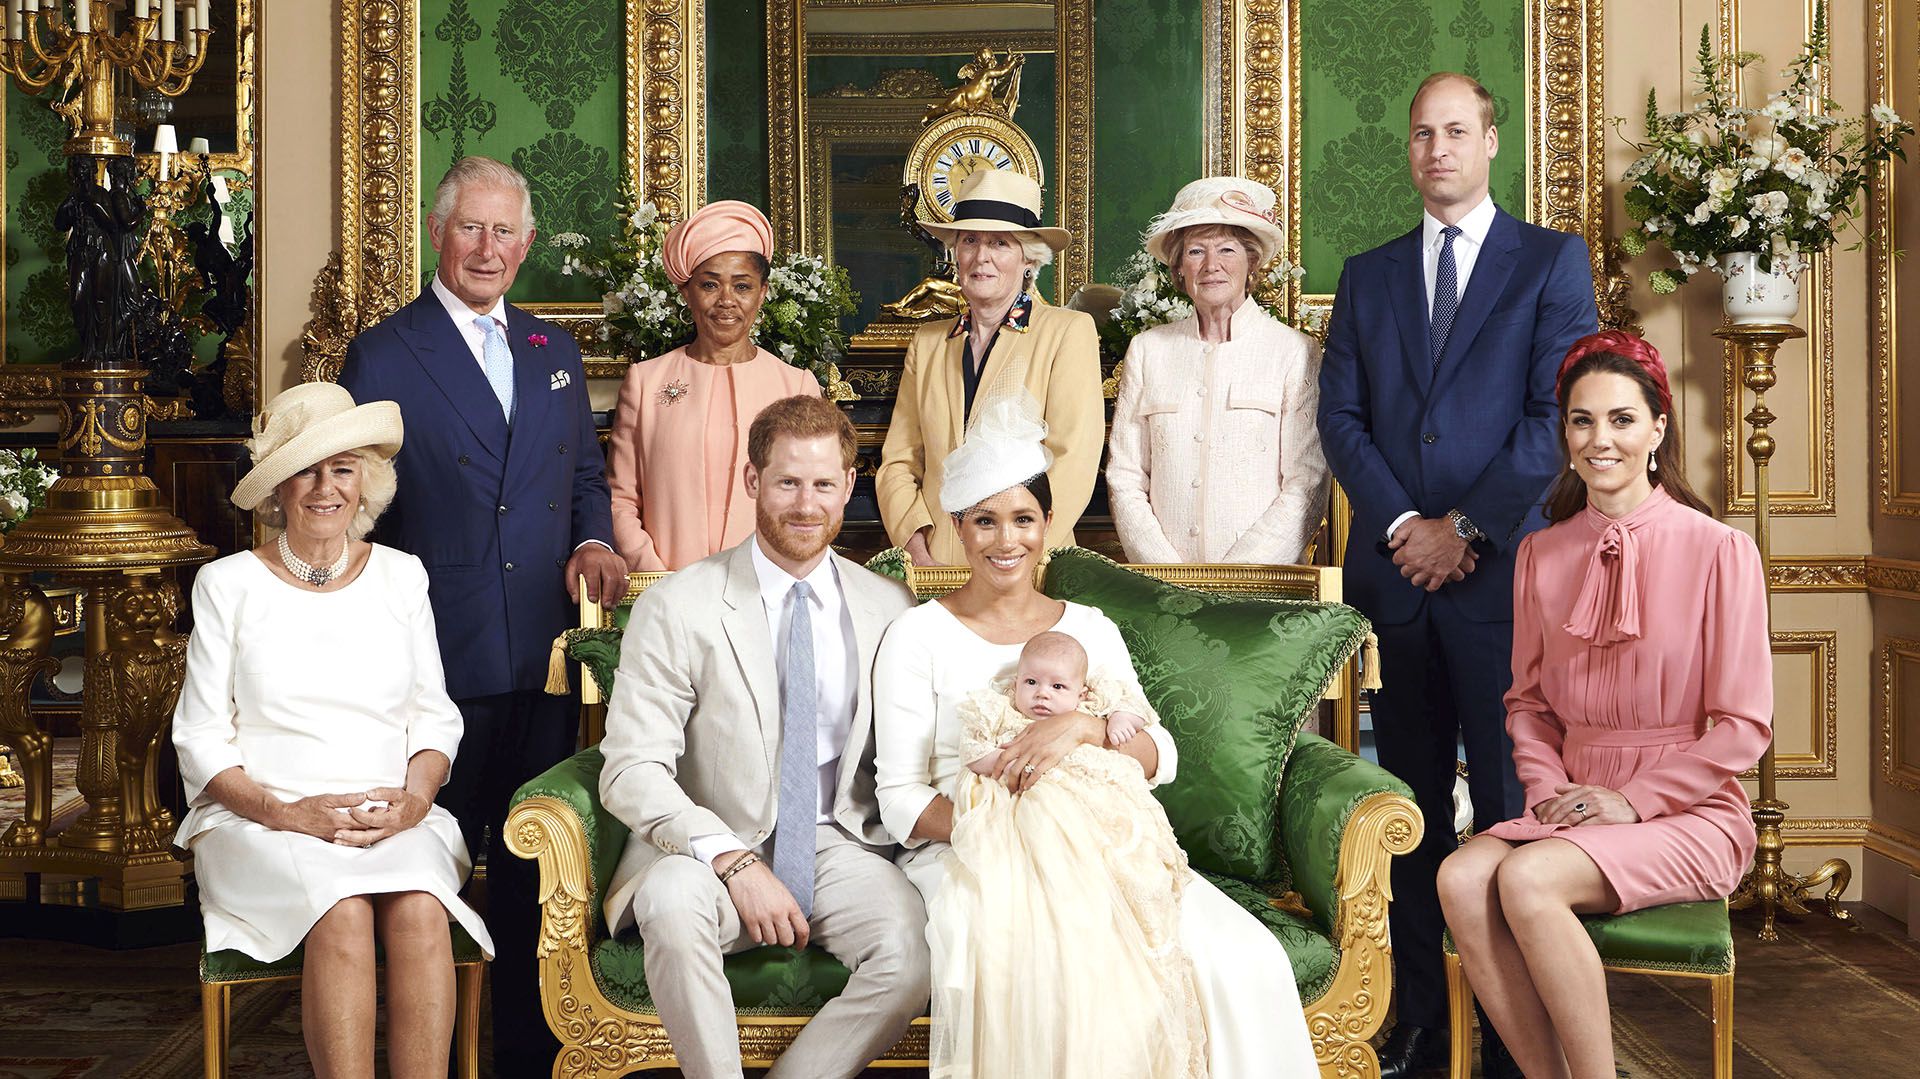 El príncipe Carlos al lado de Doria Ragland, madre de Meghan Markle, junto a Lady Jane Fellowes y Lady Sarah McCorquodale, hermanas de Lady Di, los duques de Sussex y de Cambridge